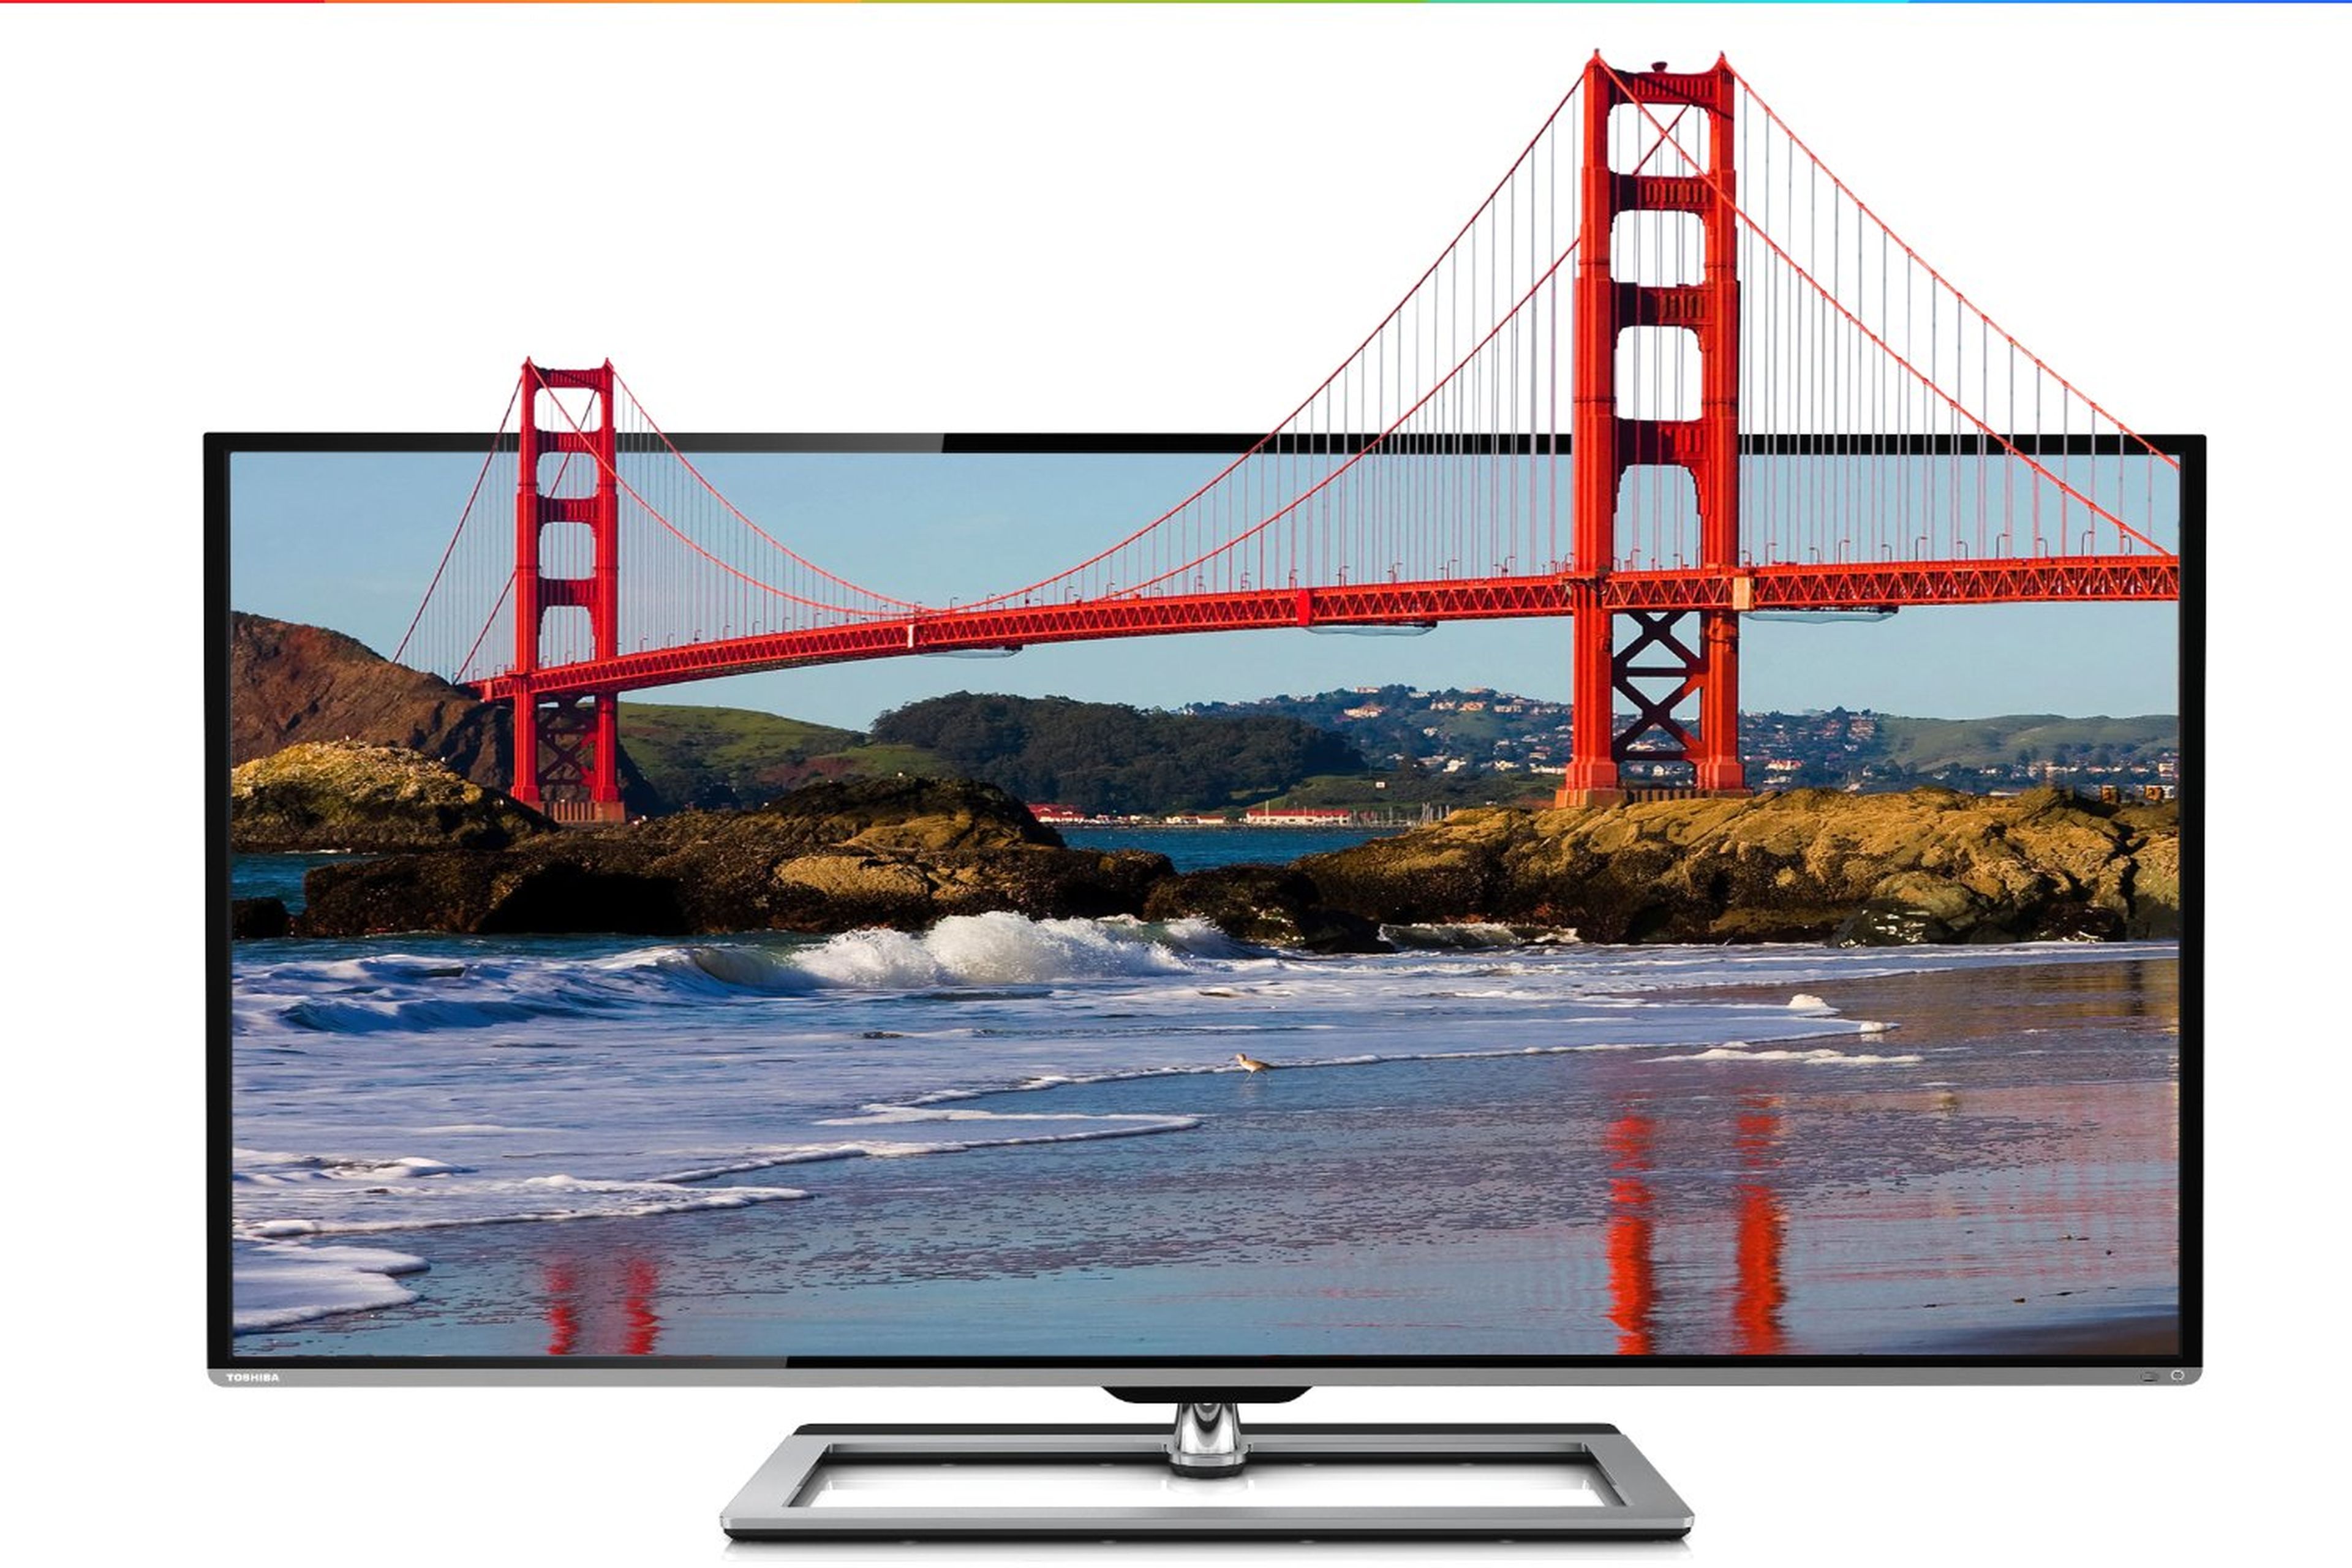 Toshiba lanza nuevos televisores con tecnología Cloud TV